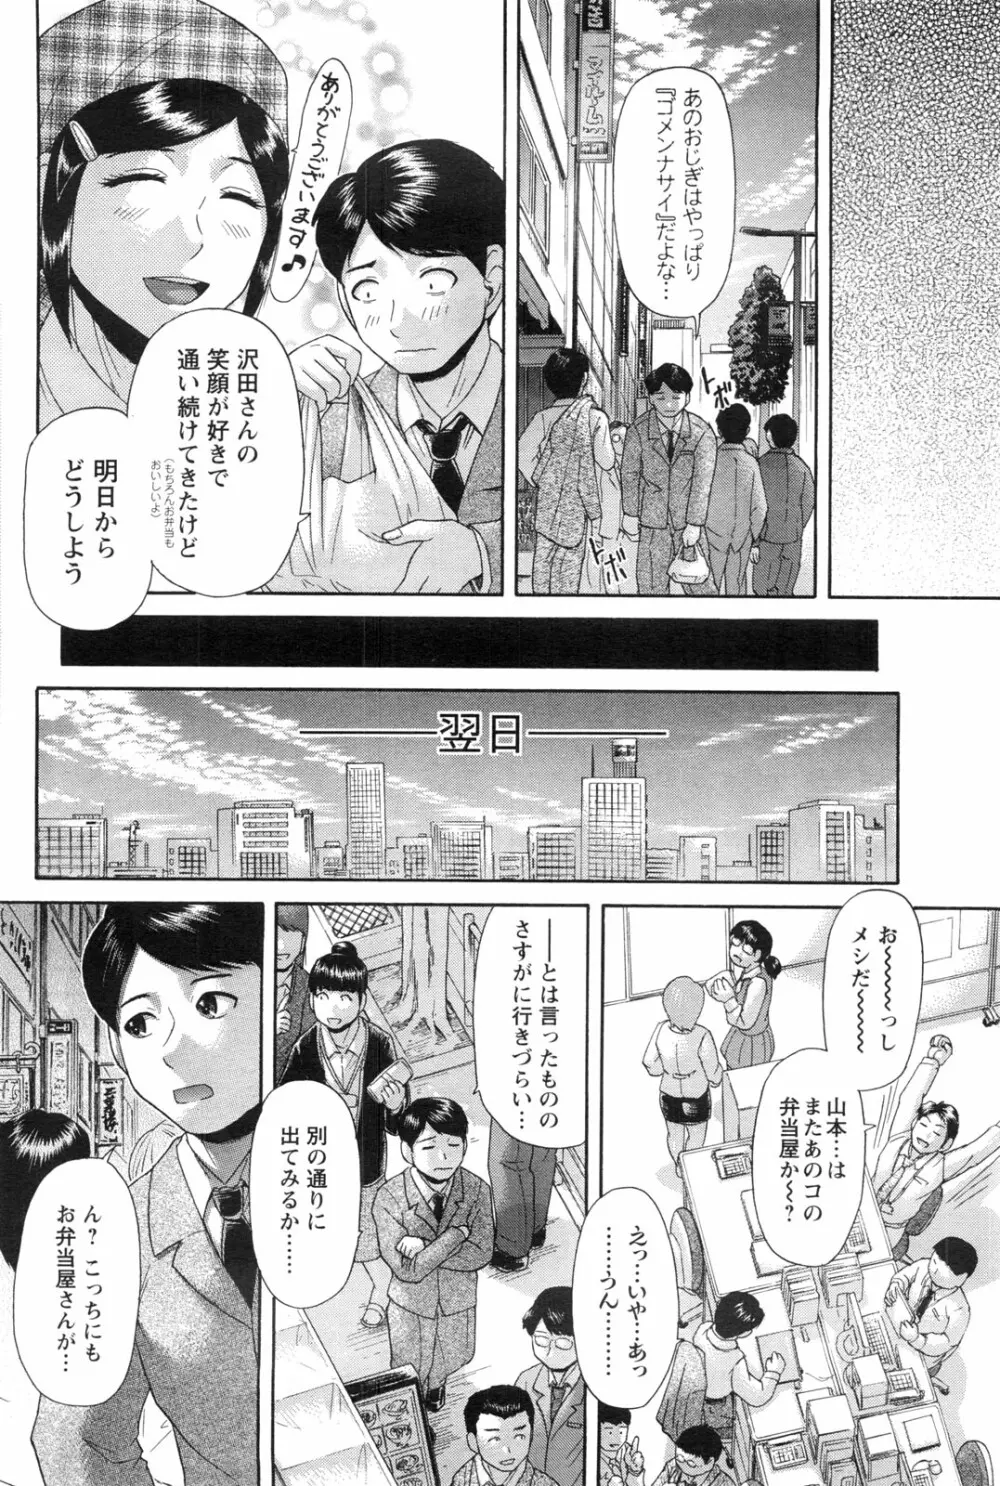 メンズヤングスペシャルIKAZUCHI雷 Vol.13 2010年3月号増刊 97ページ